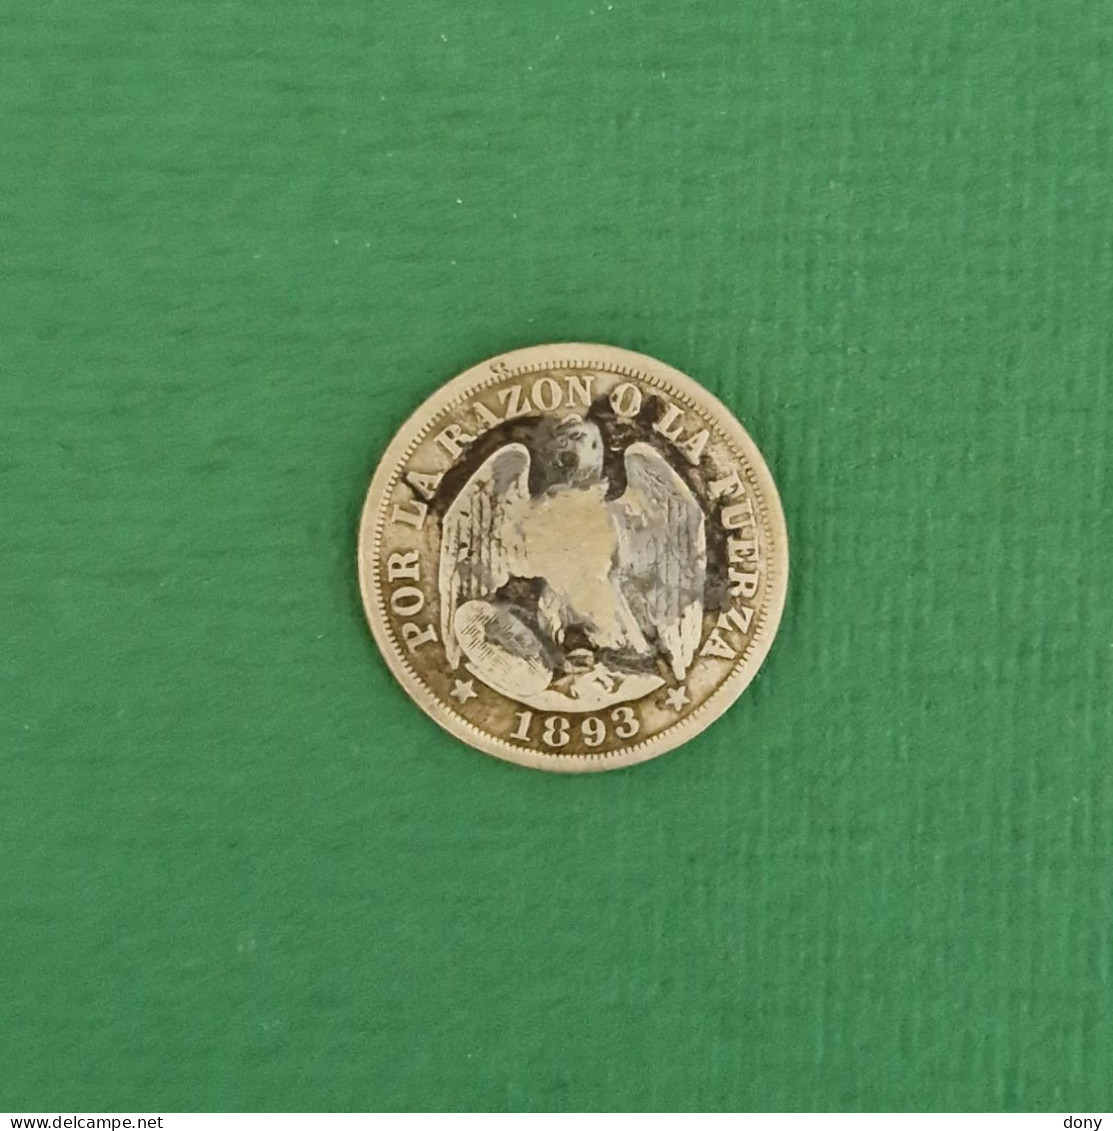 Moneda 20 Cents, Centavos De Plata 1893 República De Chile. - Chili